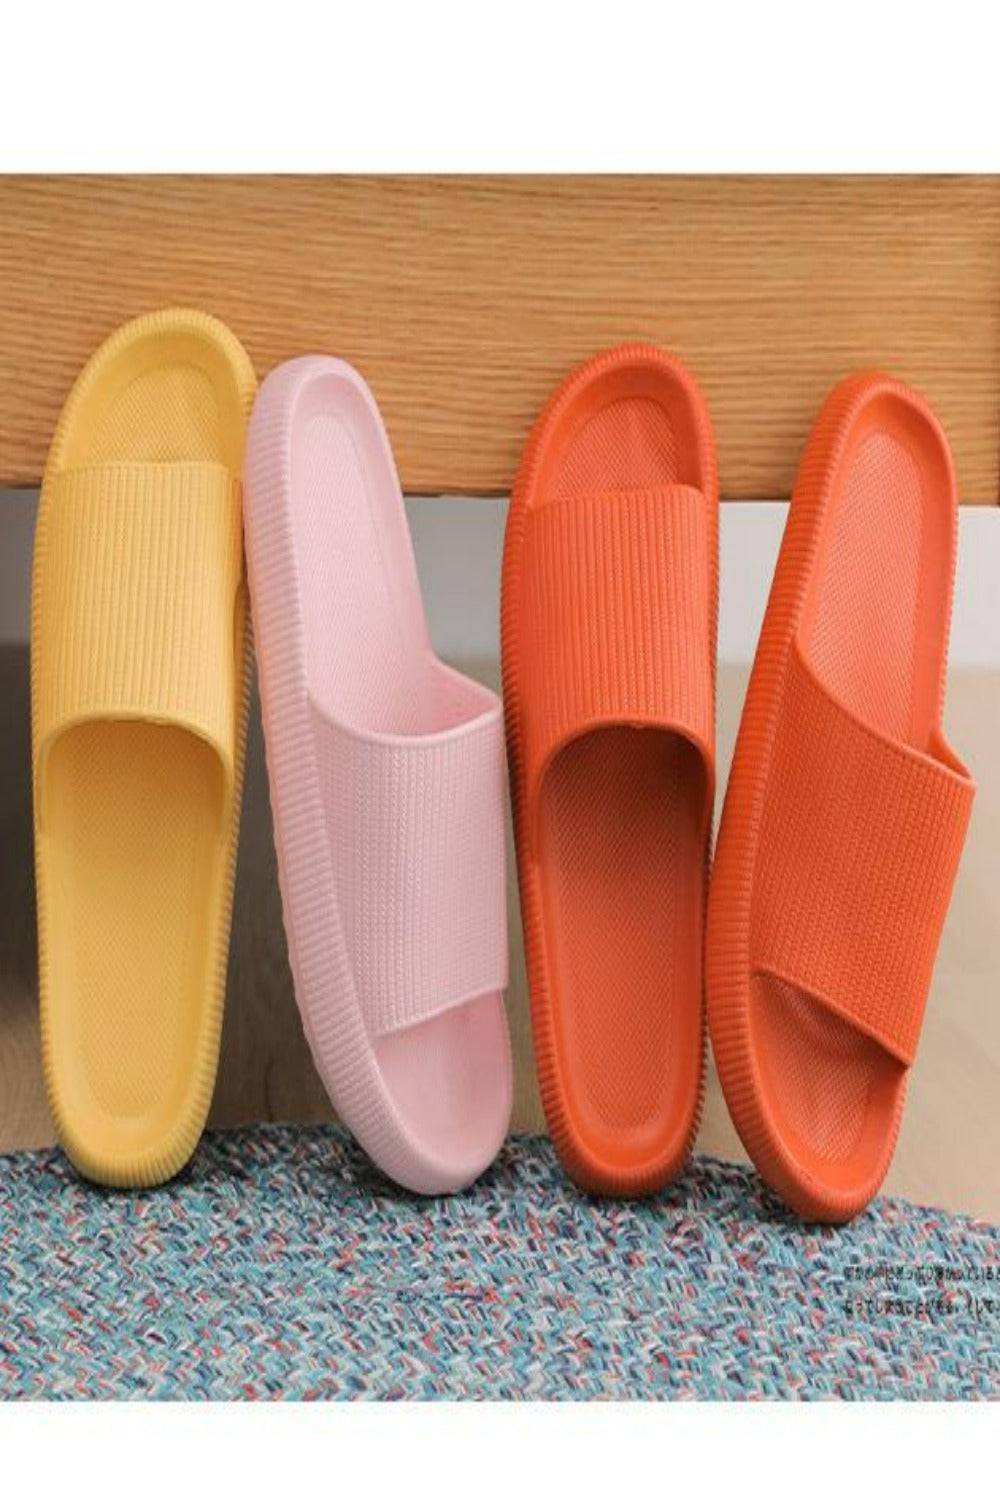 Thick Platform Comfy Orange Rubber Slide Sandals - TGC Boutique - Orange Slides